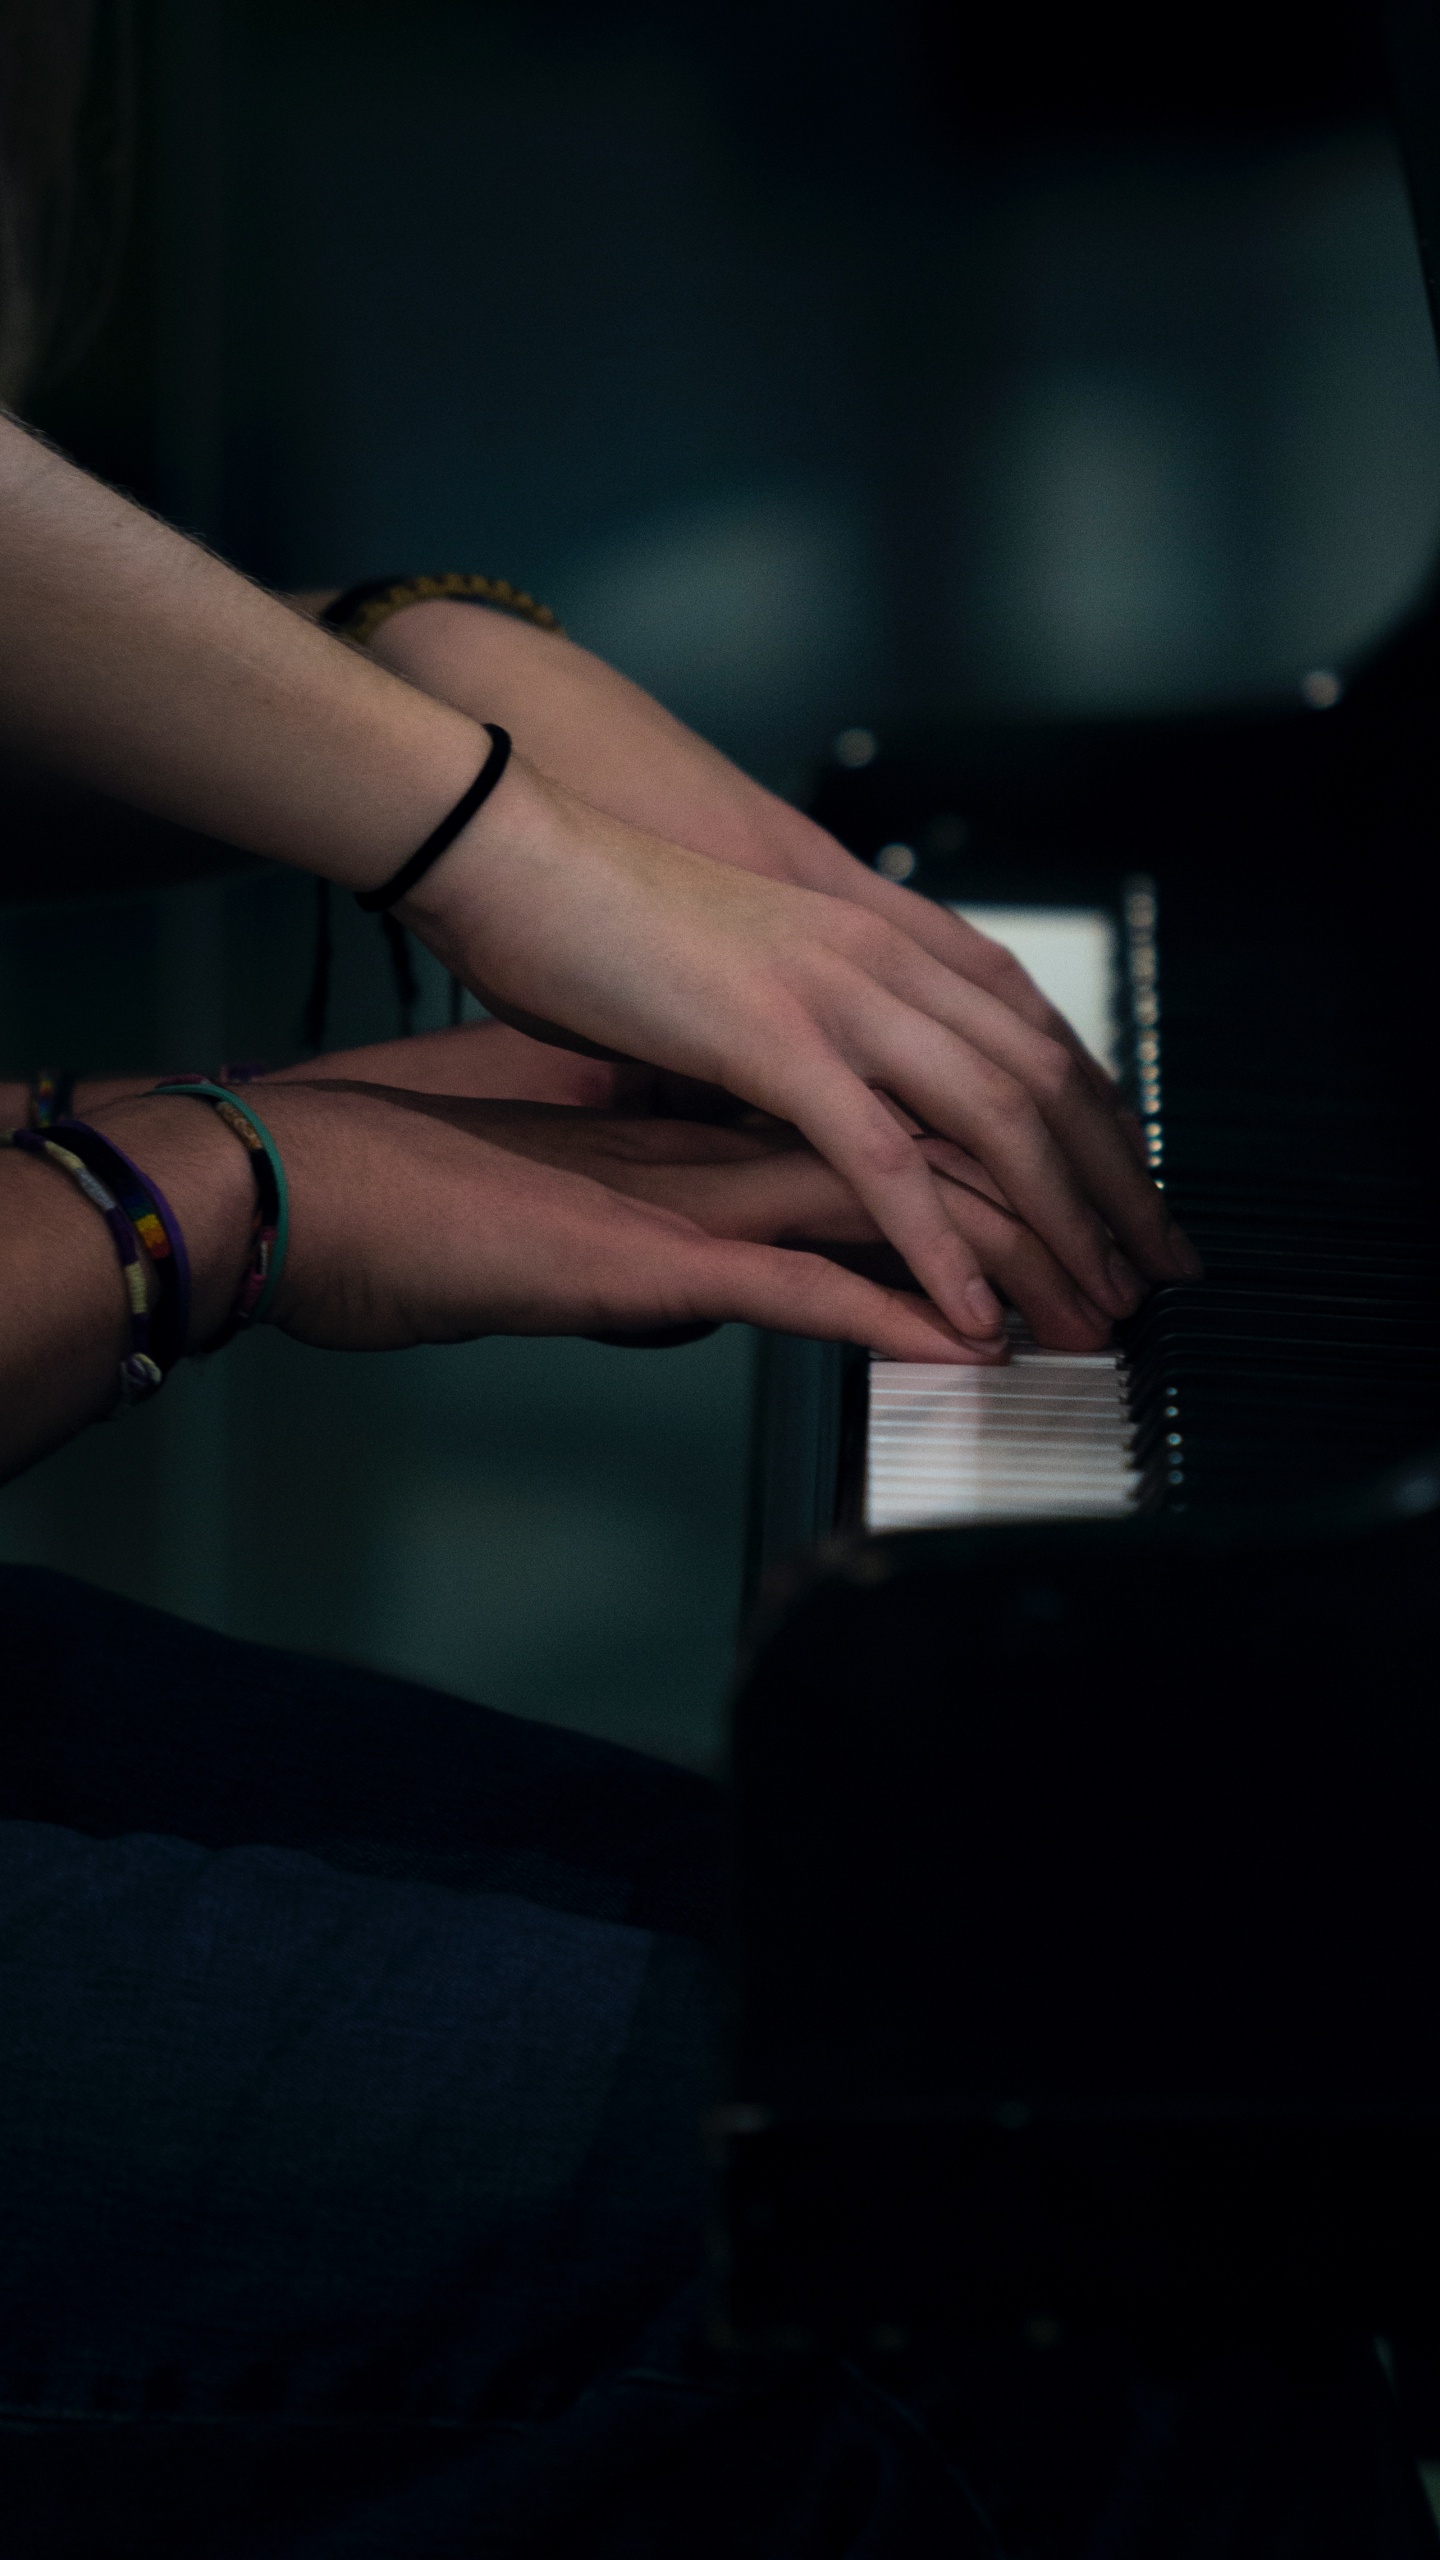 钢琴, 钢琴家, 手, 音乐家, 手臂 壁纸 1440x2560 允许